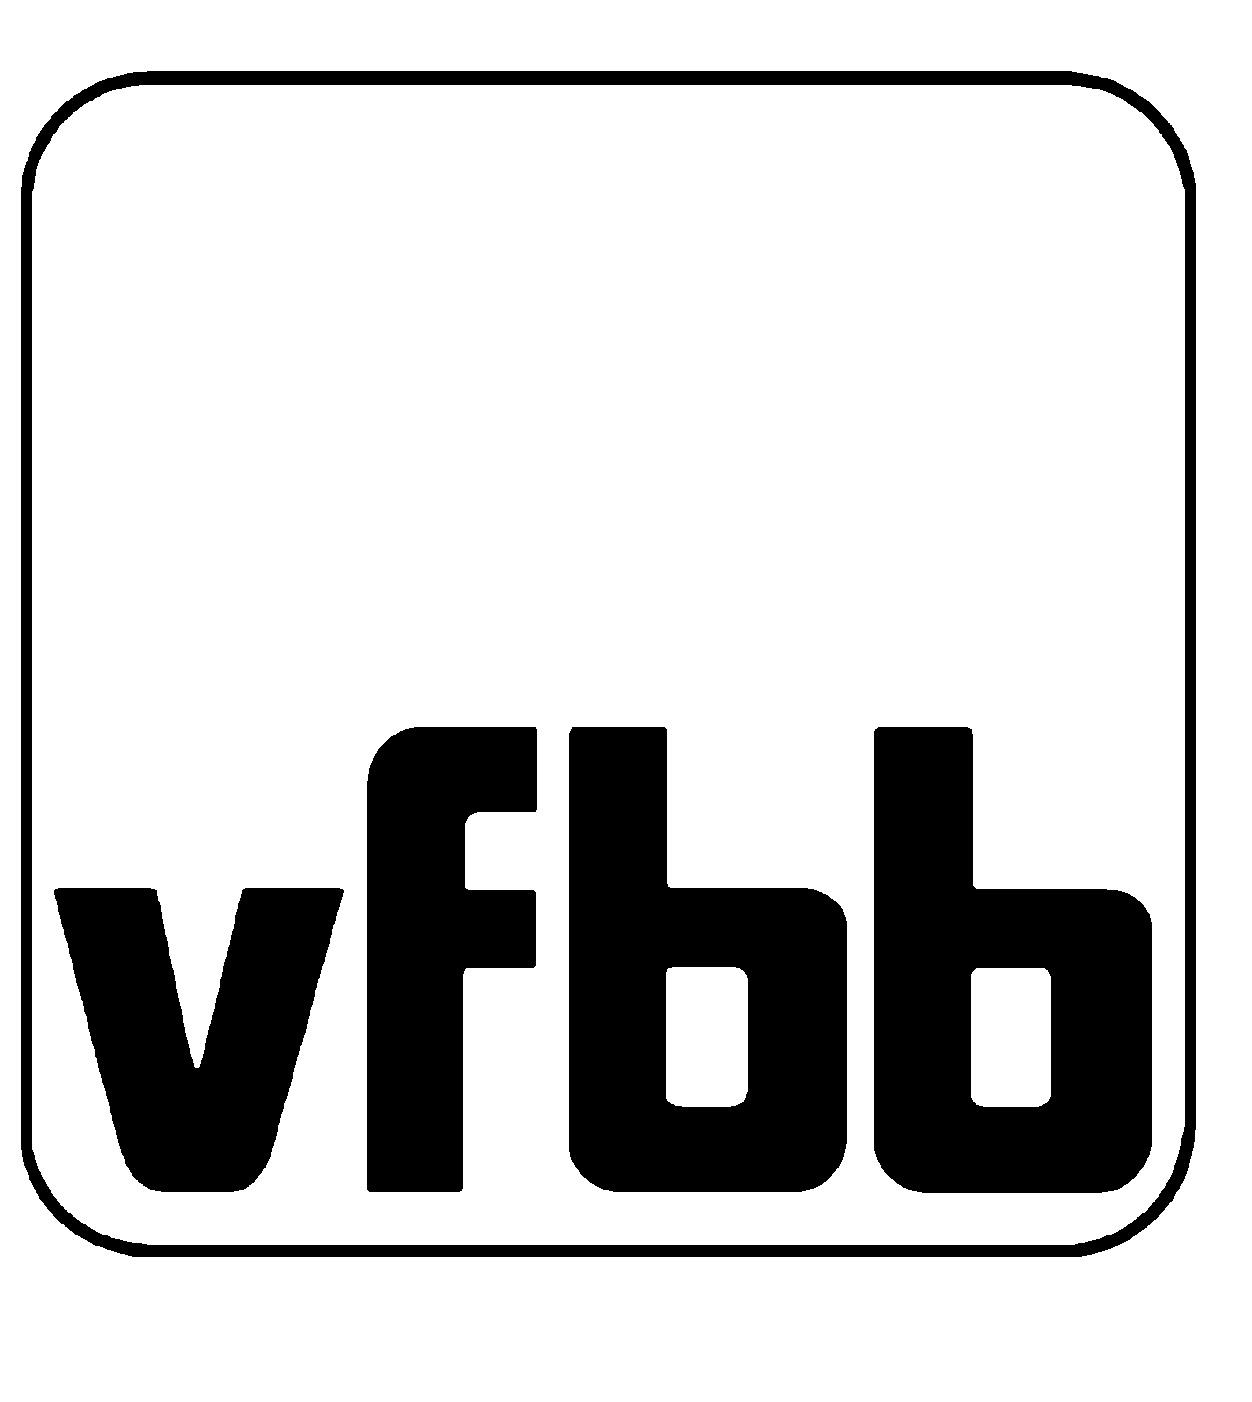 VFBB2